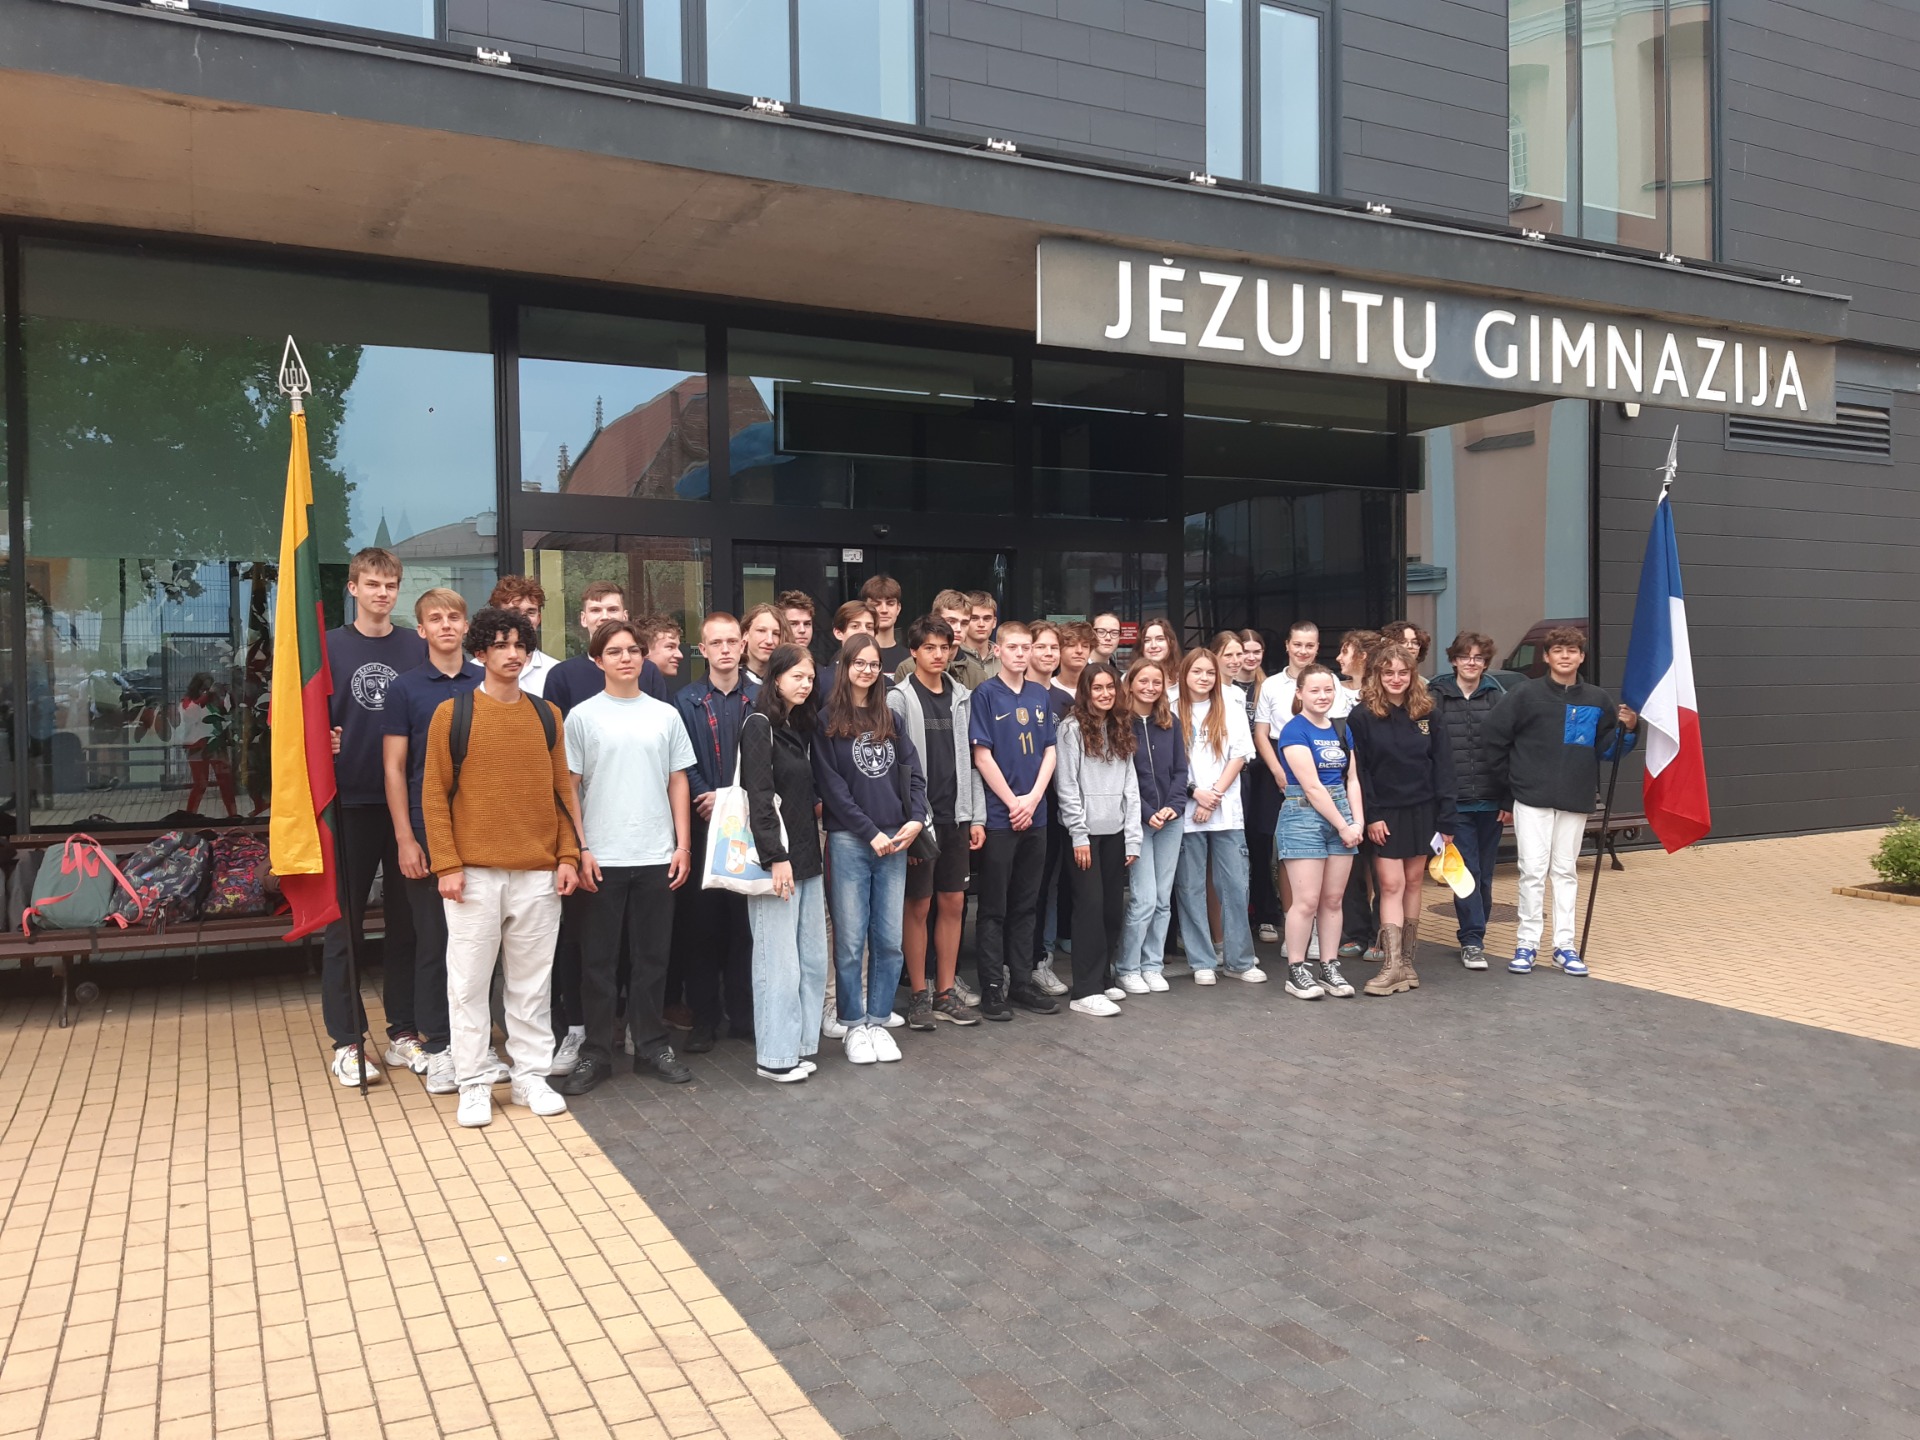 Mokiniai iš Prancūzijos viešėjo KJG ir pažino Lietuvą - Paveikslėlis 1